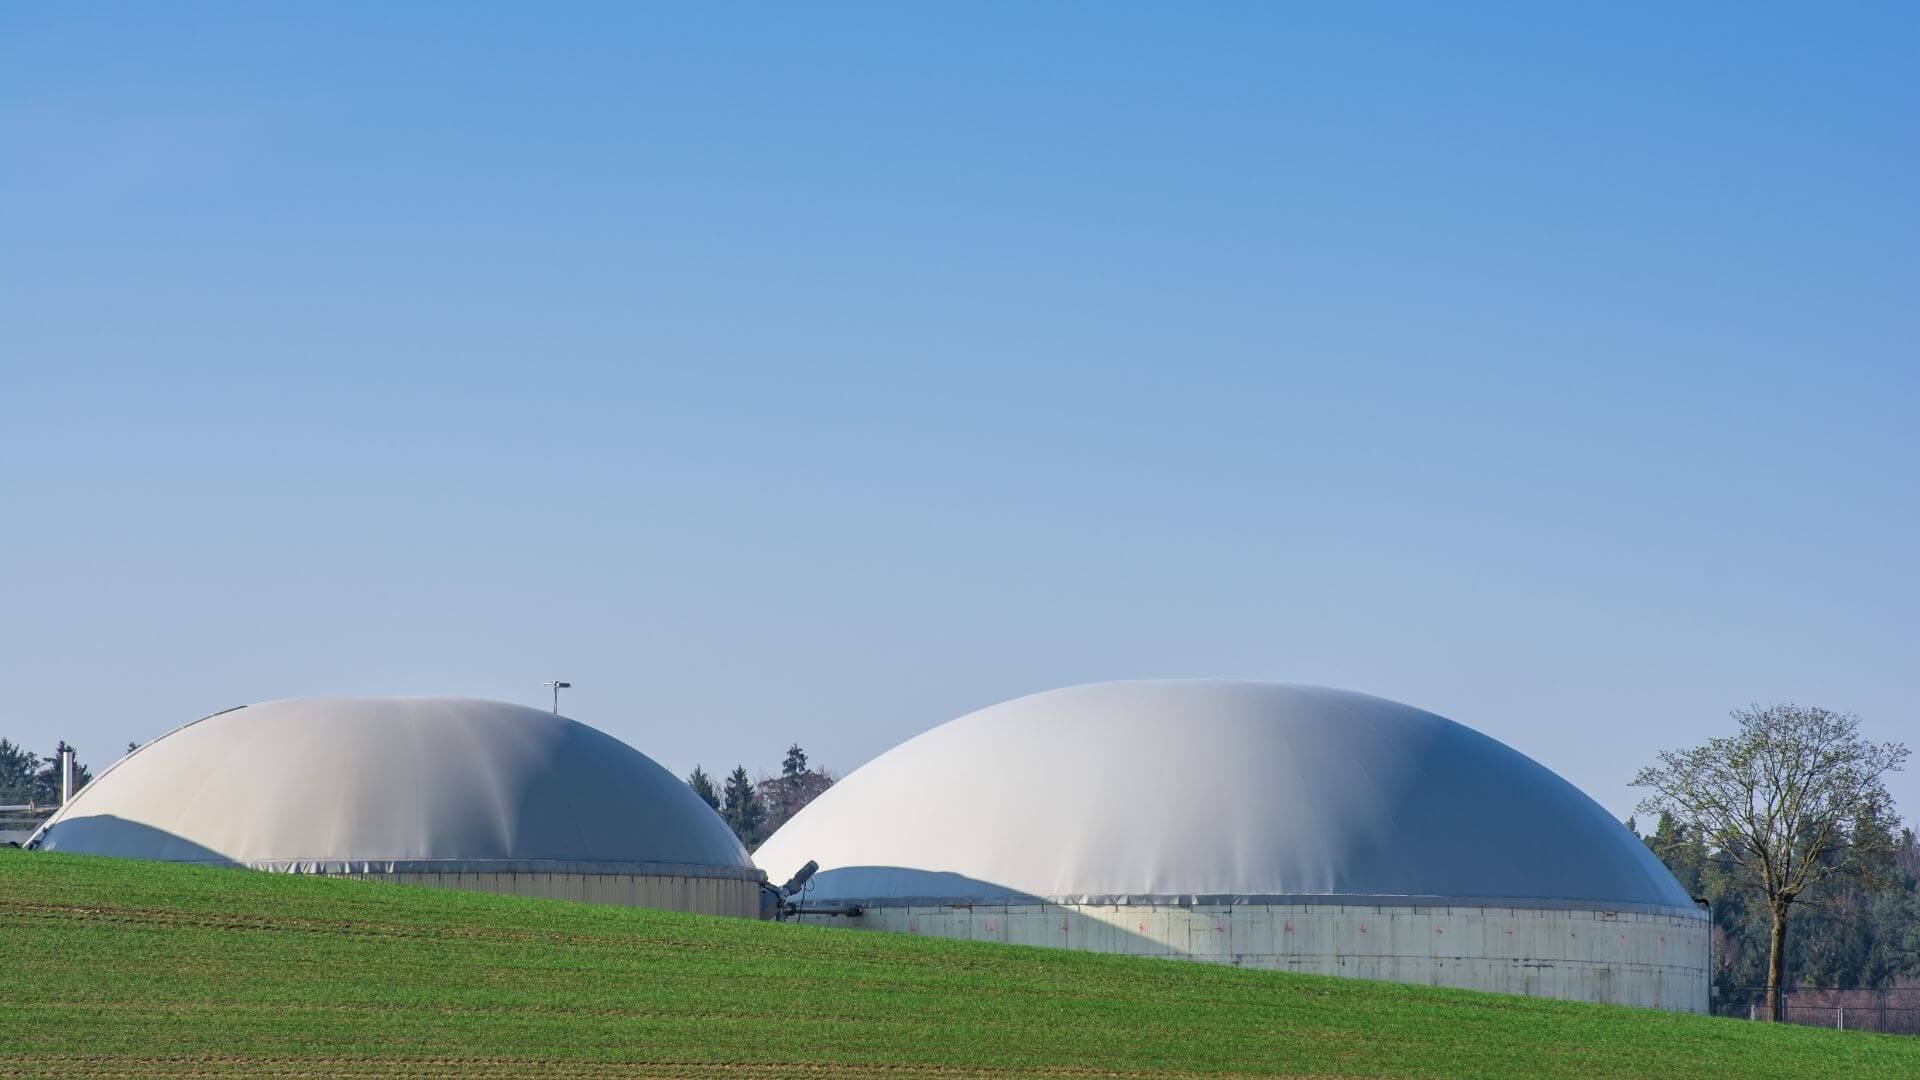 Projeto de biogás no Paraná, do Grupo Le Mele, mira exportação de petróleo sintético (syncrude) para refinarias na Alemanha. Na imagem: Usina da Vivo instalada em uma área de 1.490 m2, junto ao aterro Terrestre Ambiental, utilizará entre 2.500 e 5.000 Nm³/h de biogás com alto teor de metano – cerca de 50% (Foto: Divulgação)